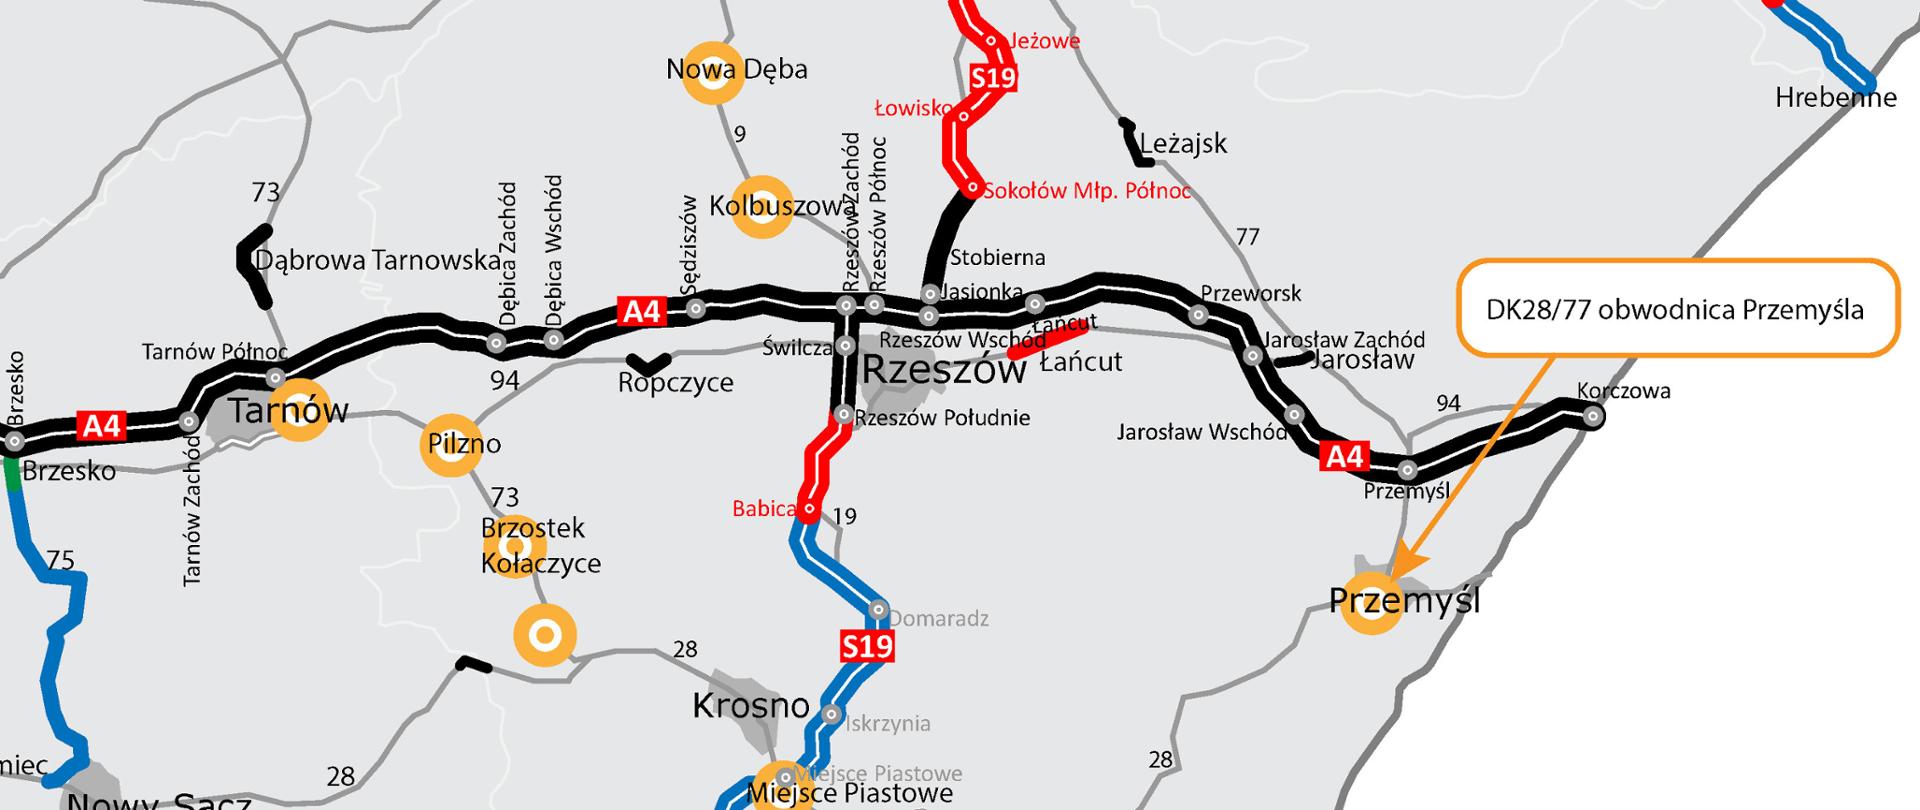 Mapa województwa z obwodnicą Przemyśla